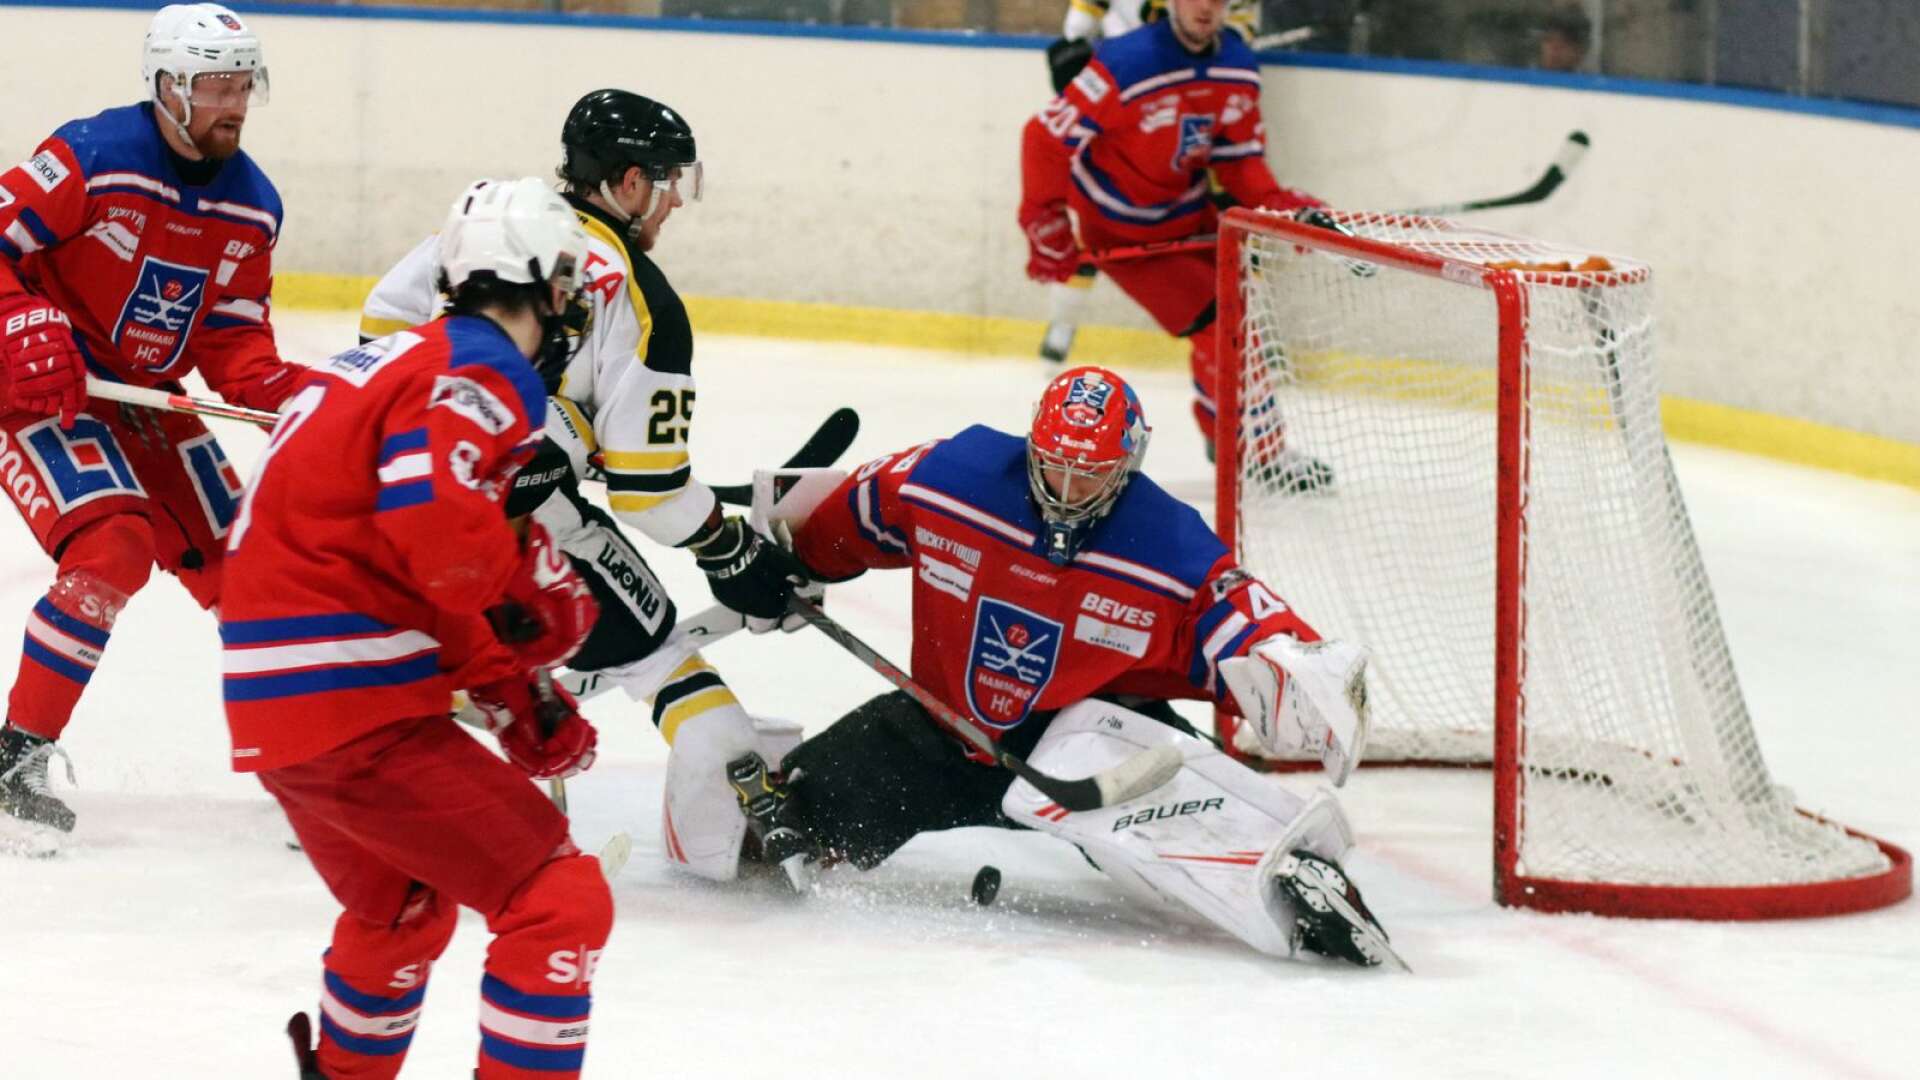  Ishockeyn pausas till den 10 december som tidigast.